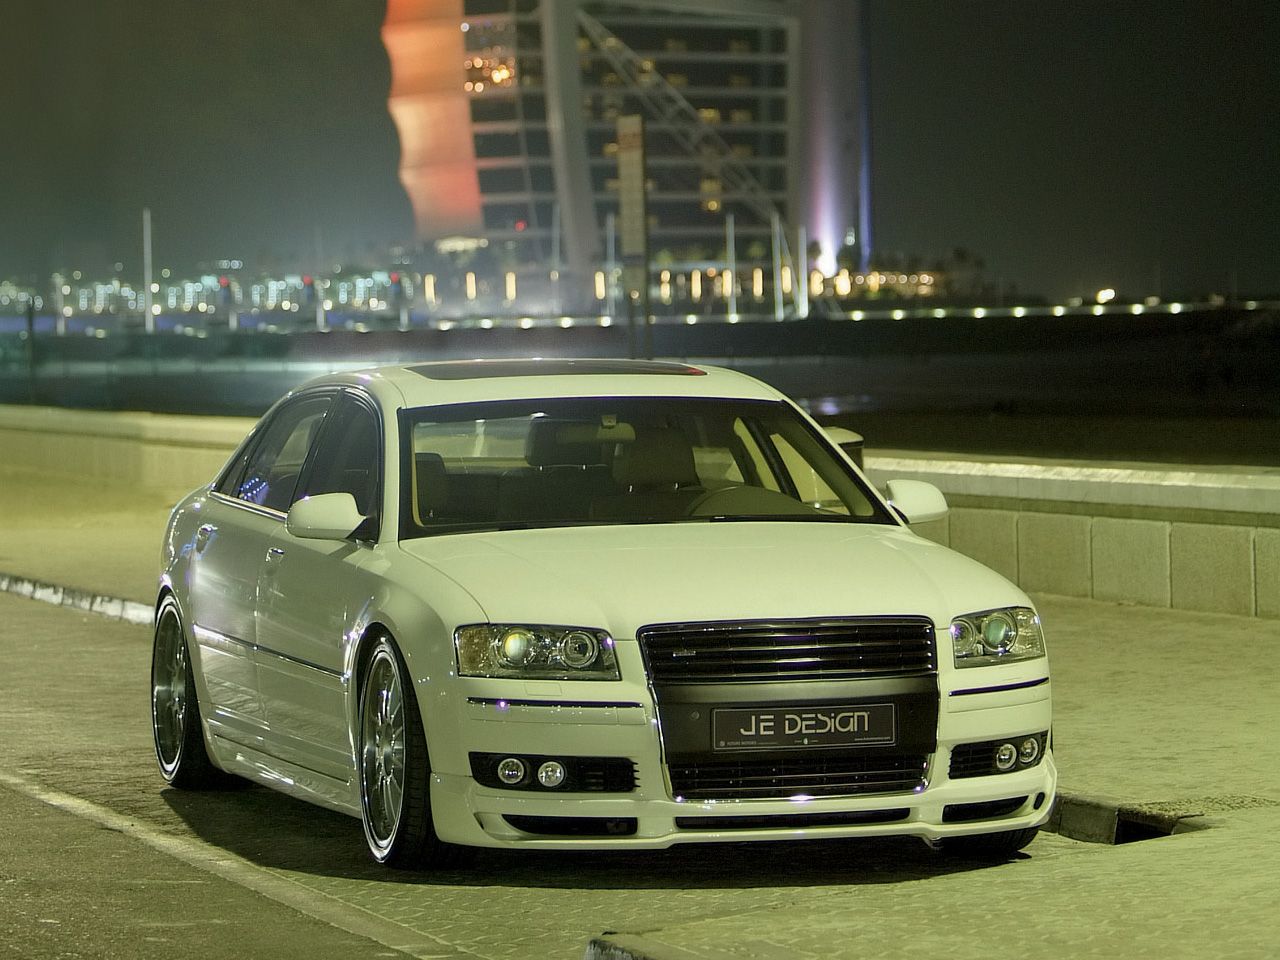 JE Design Audi A8 Dubai